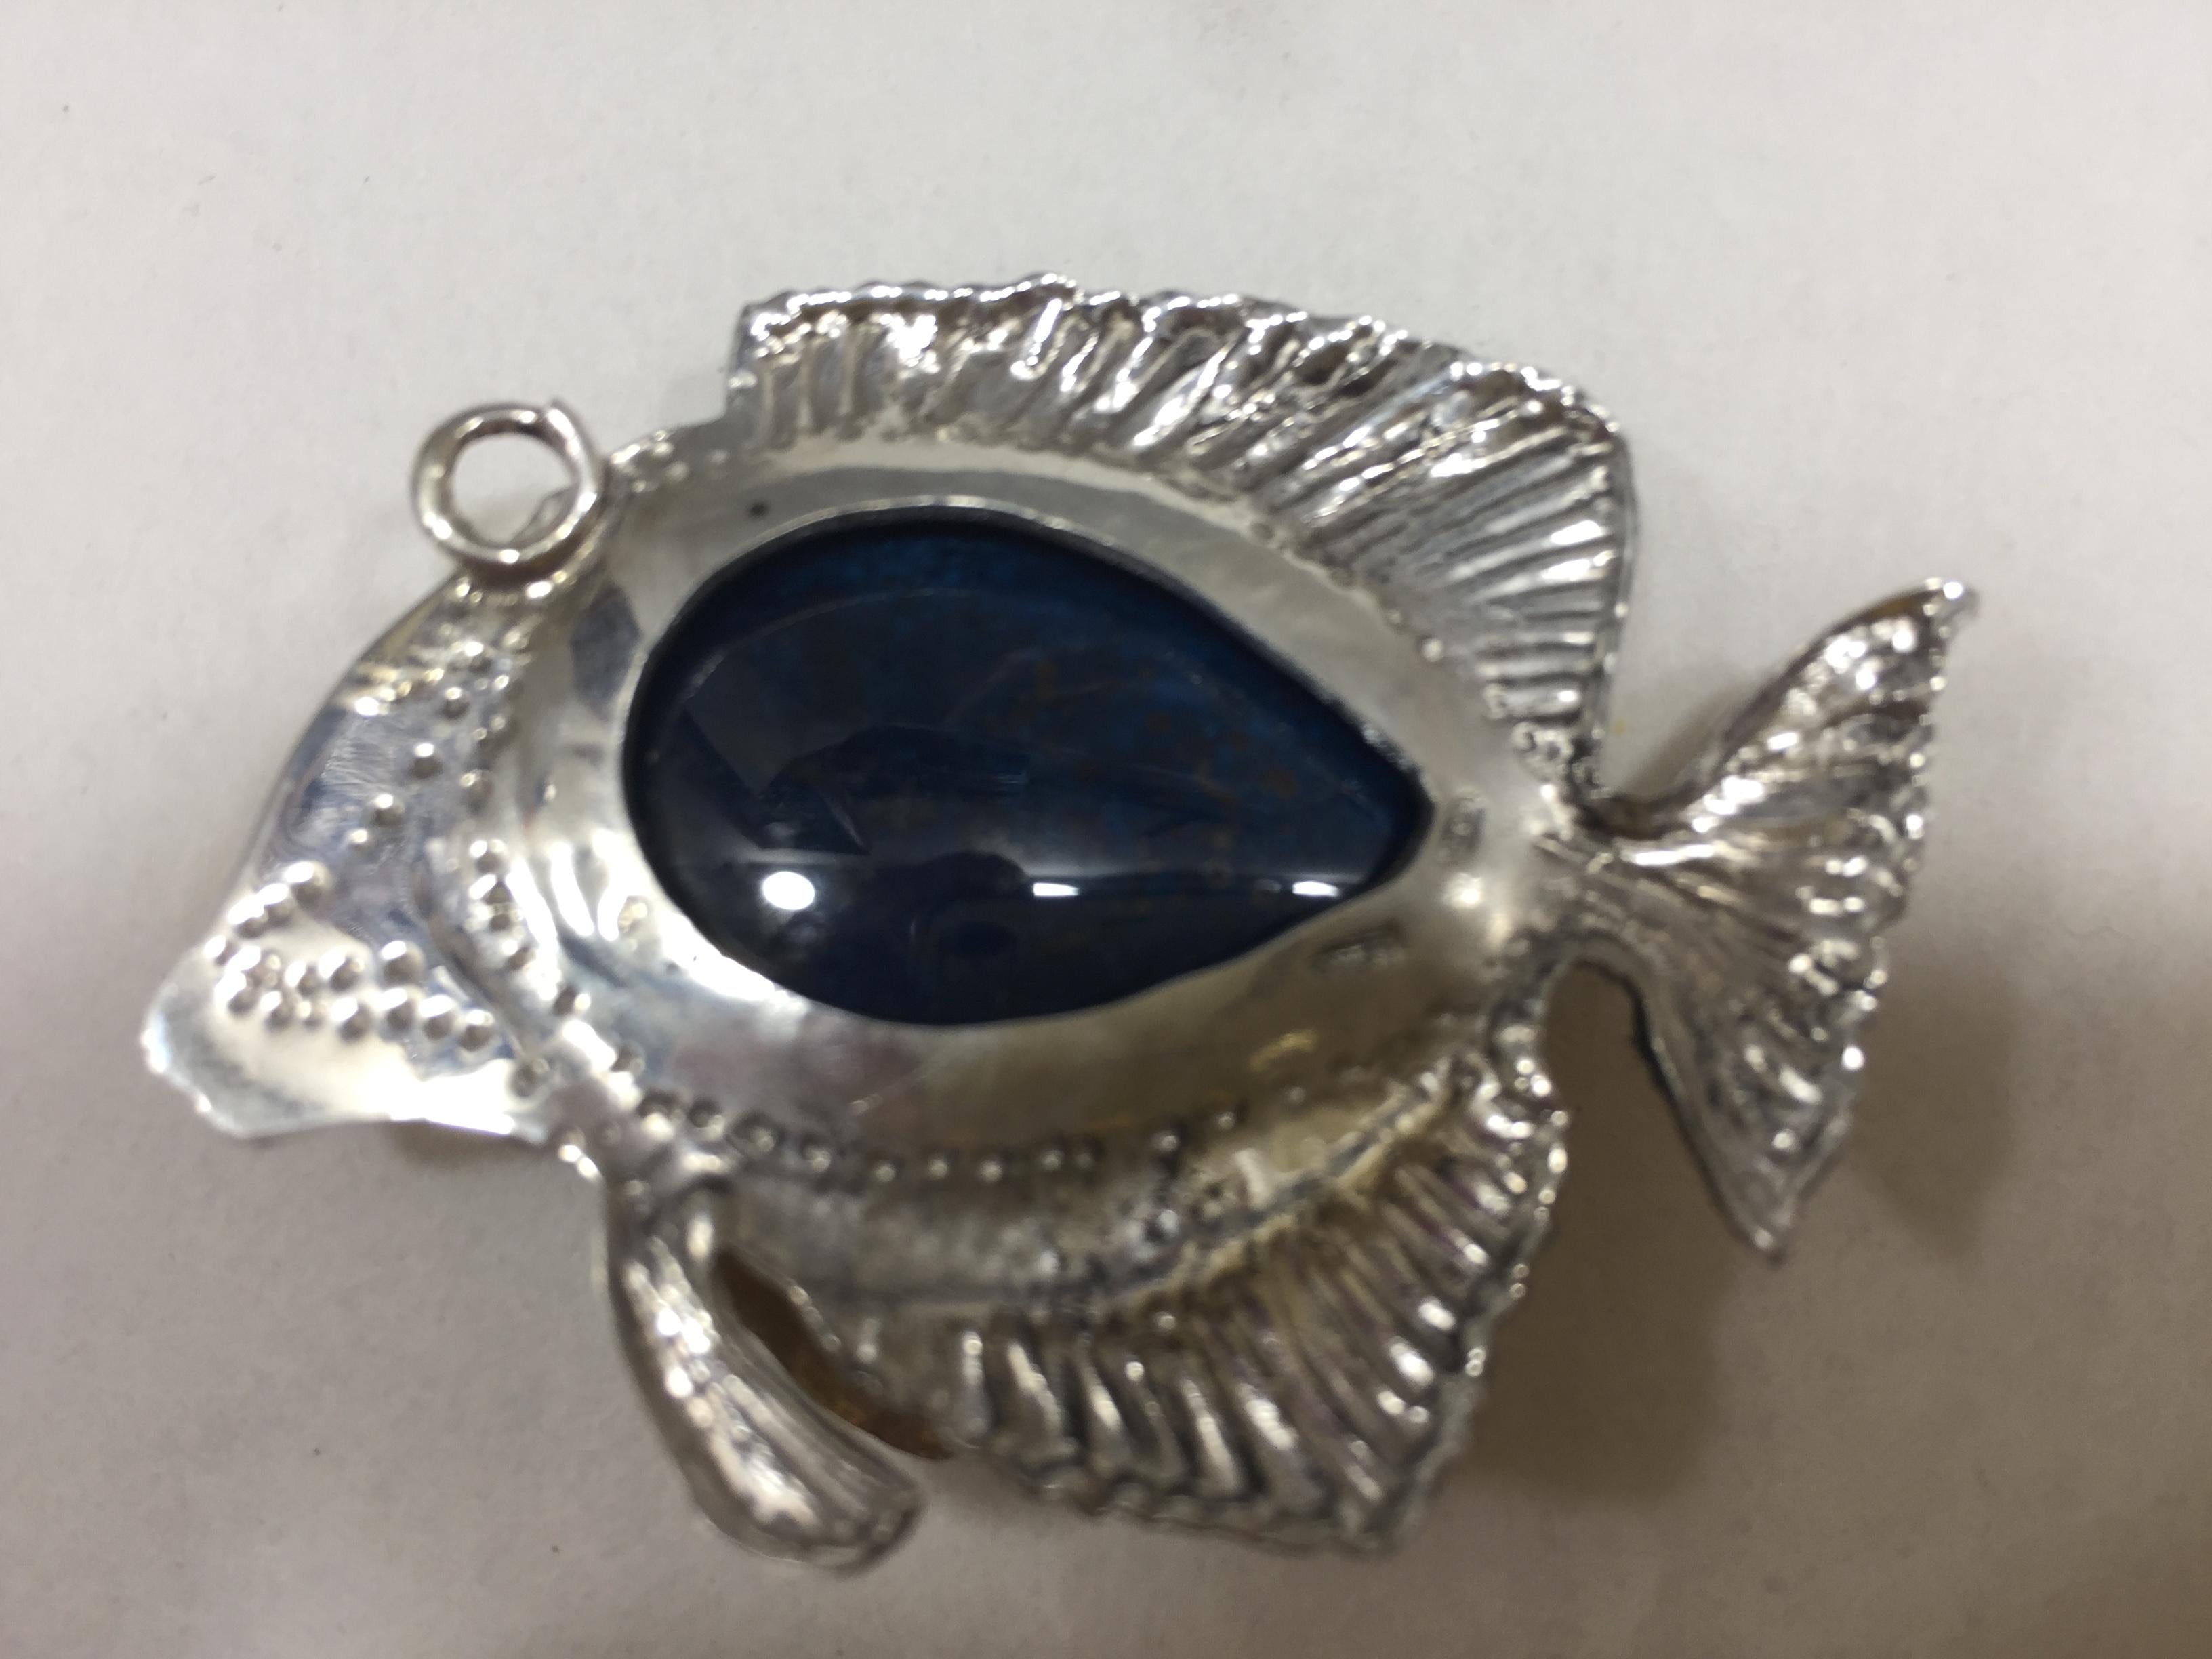 Le pendentif Fishy fait partie de notre collection de bijoux. Tous nos  les bijoux sont faits à la main : cela signifie qu'aucun n'est semblable à l'autre. En fait, notre objectif est de créer des produits uniques à forte valeur artistique. La